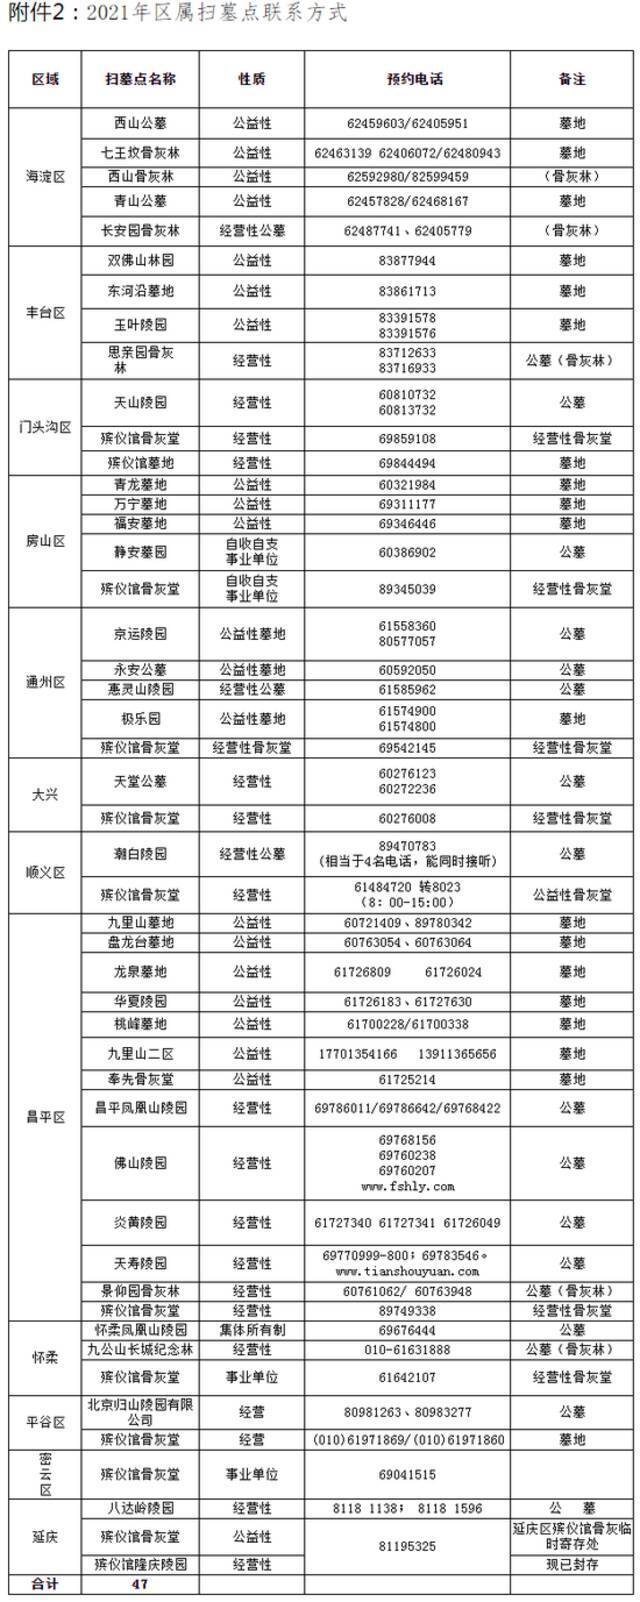 北京市清明祭扫预约通道开通 单次预约扫墓不超5人